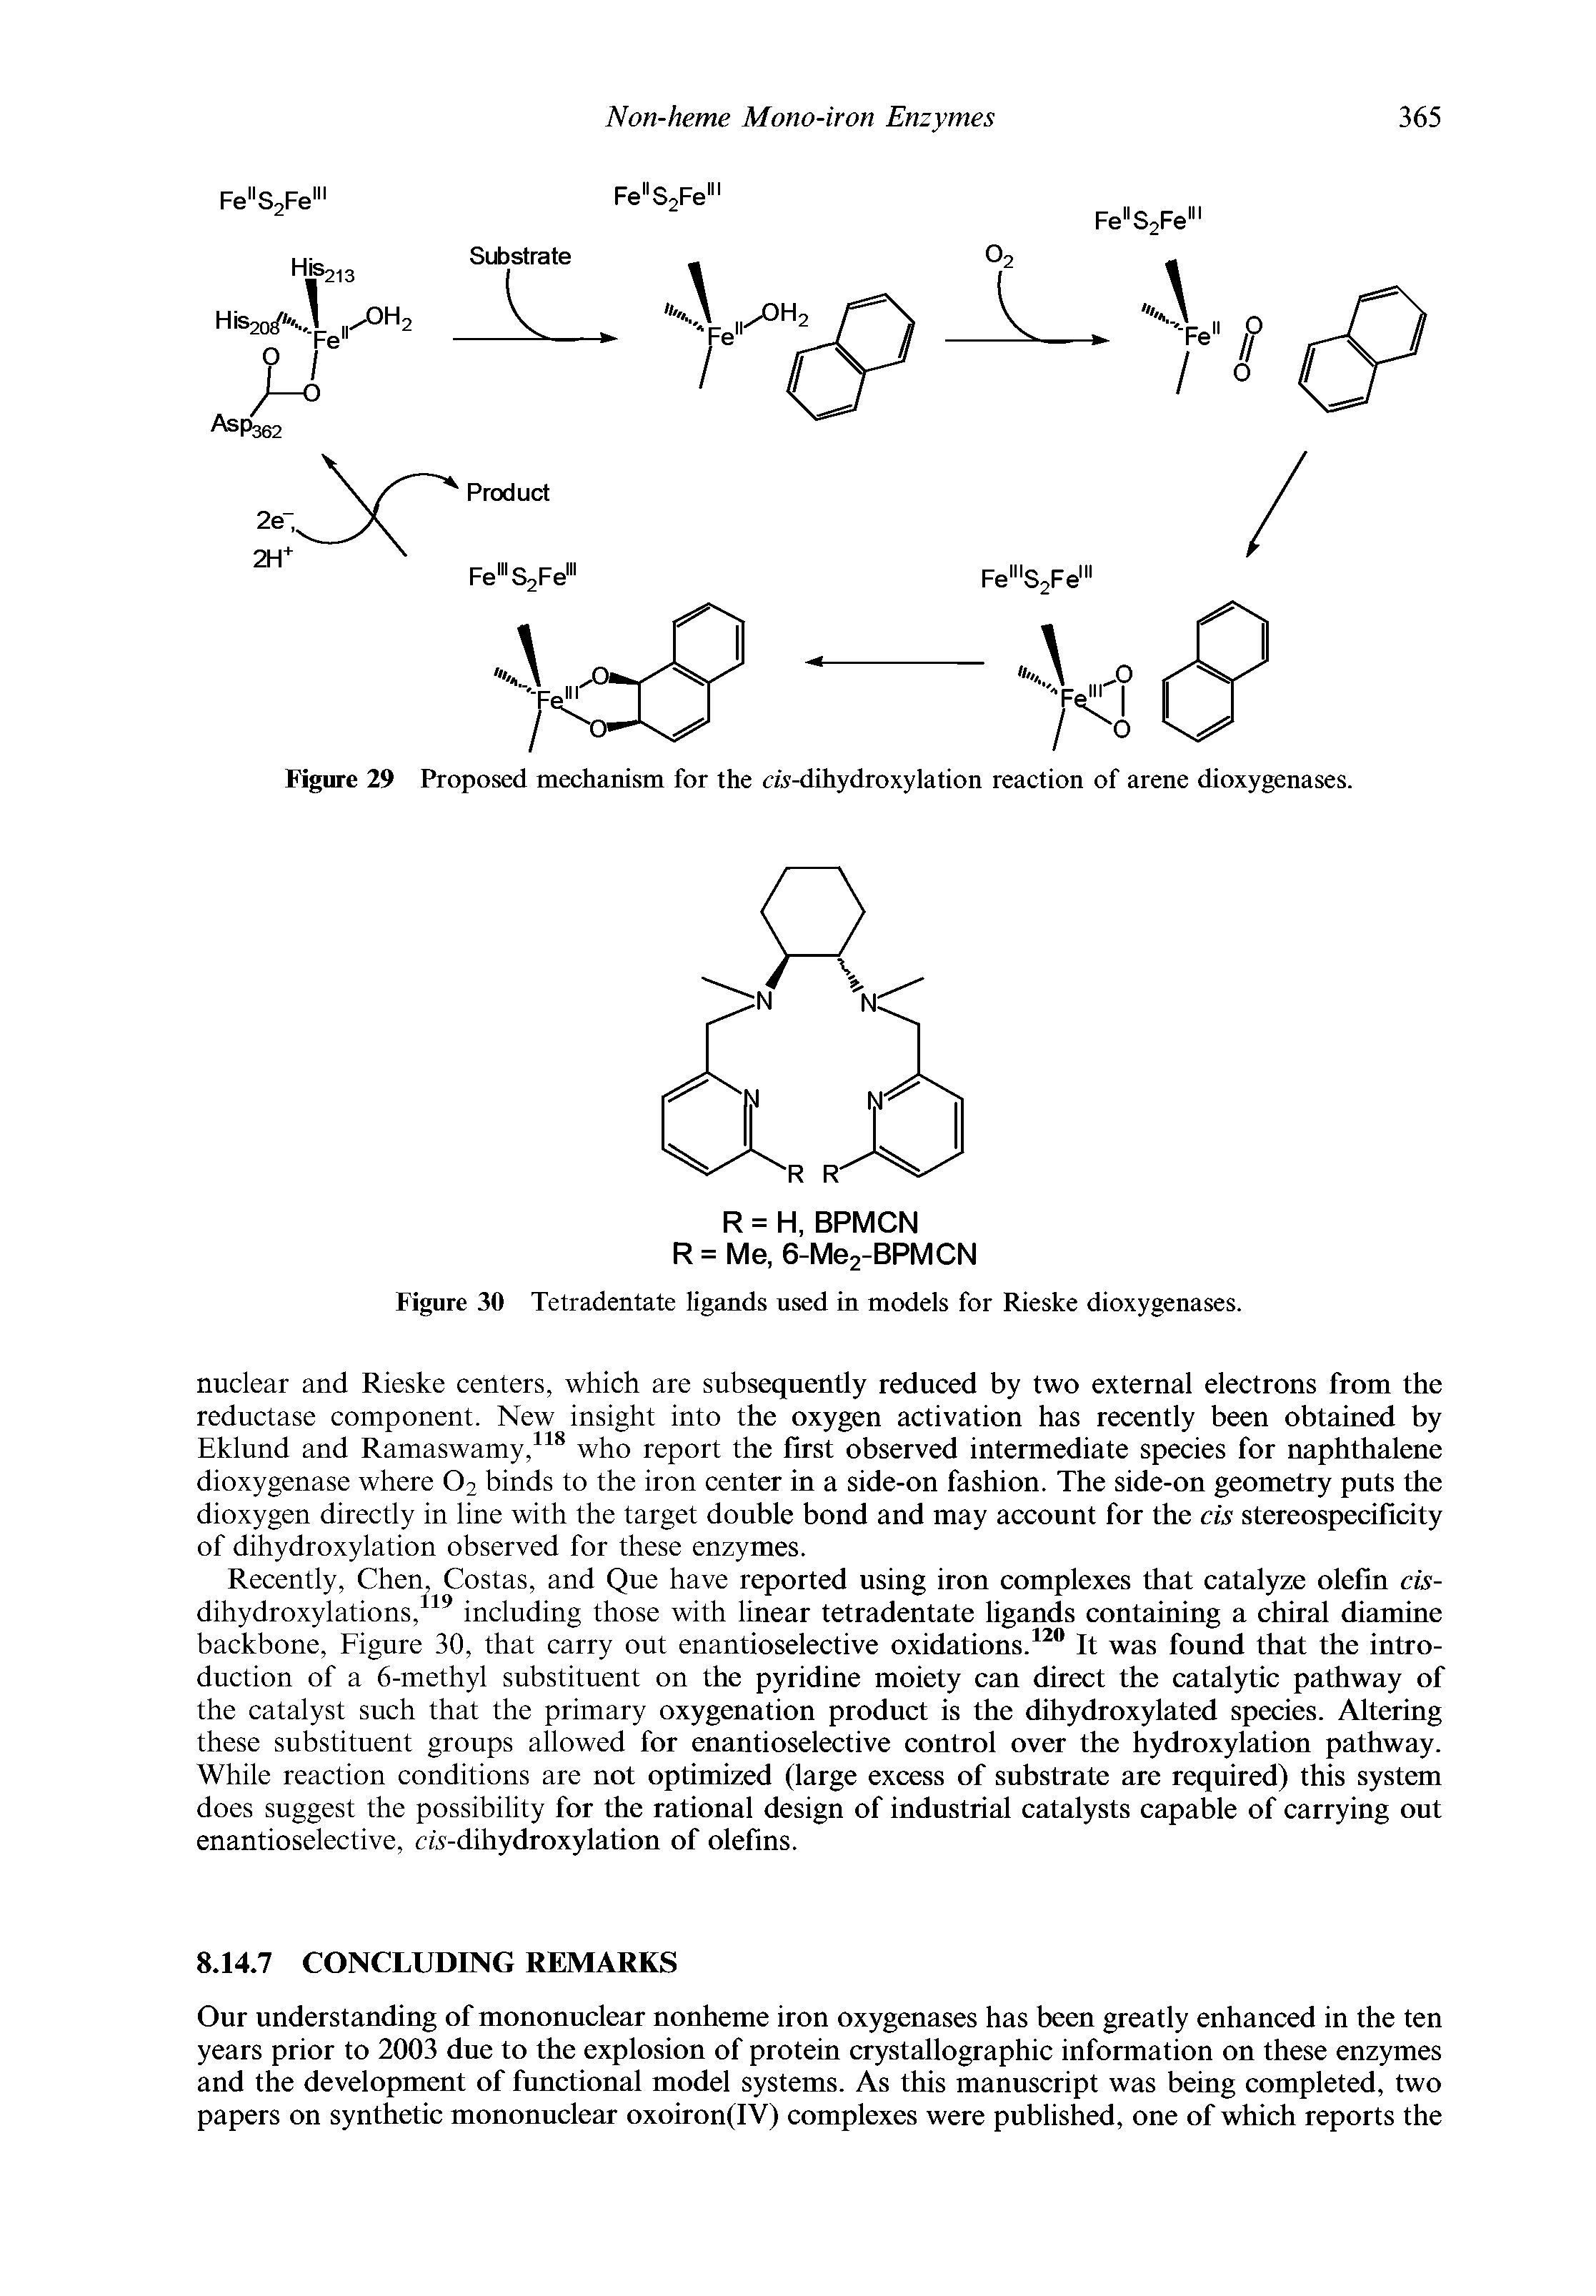 Figure 30 Tetradentate ligands used in models for Rieske dioxygenases.